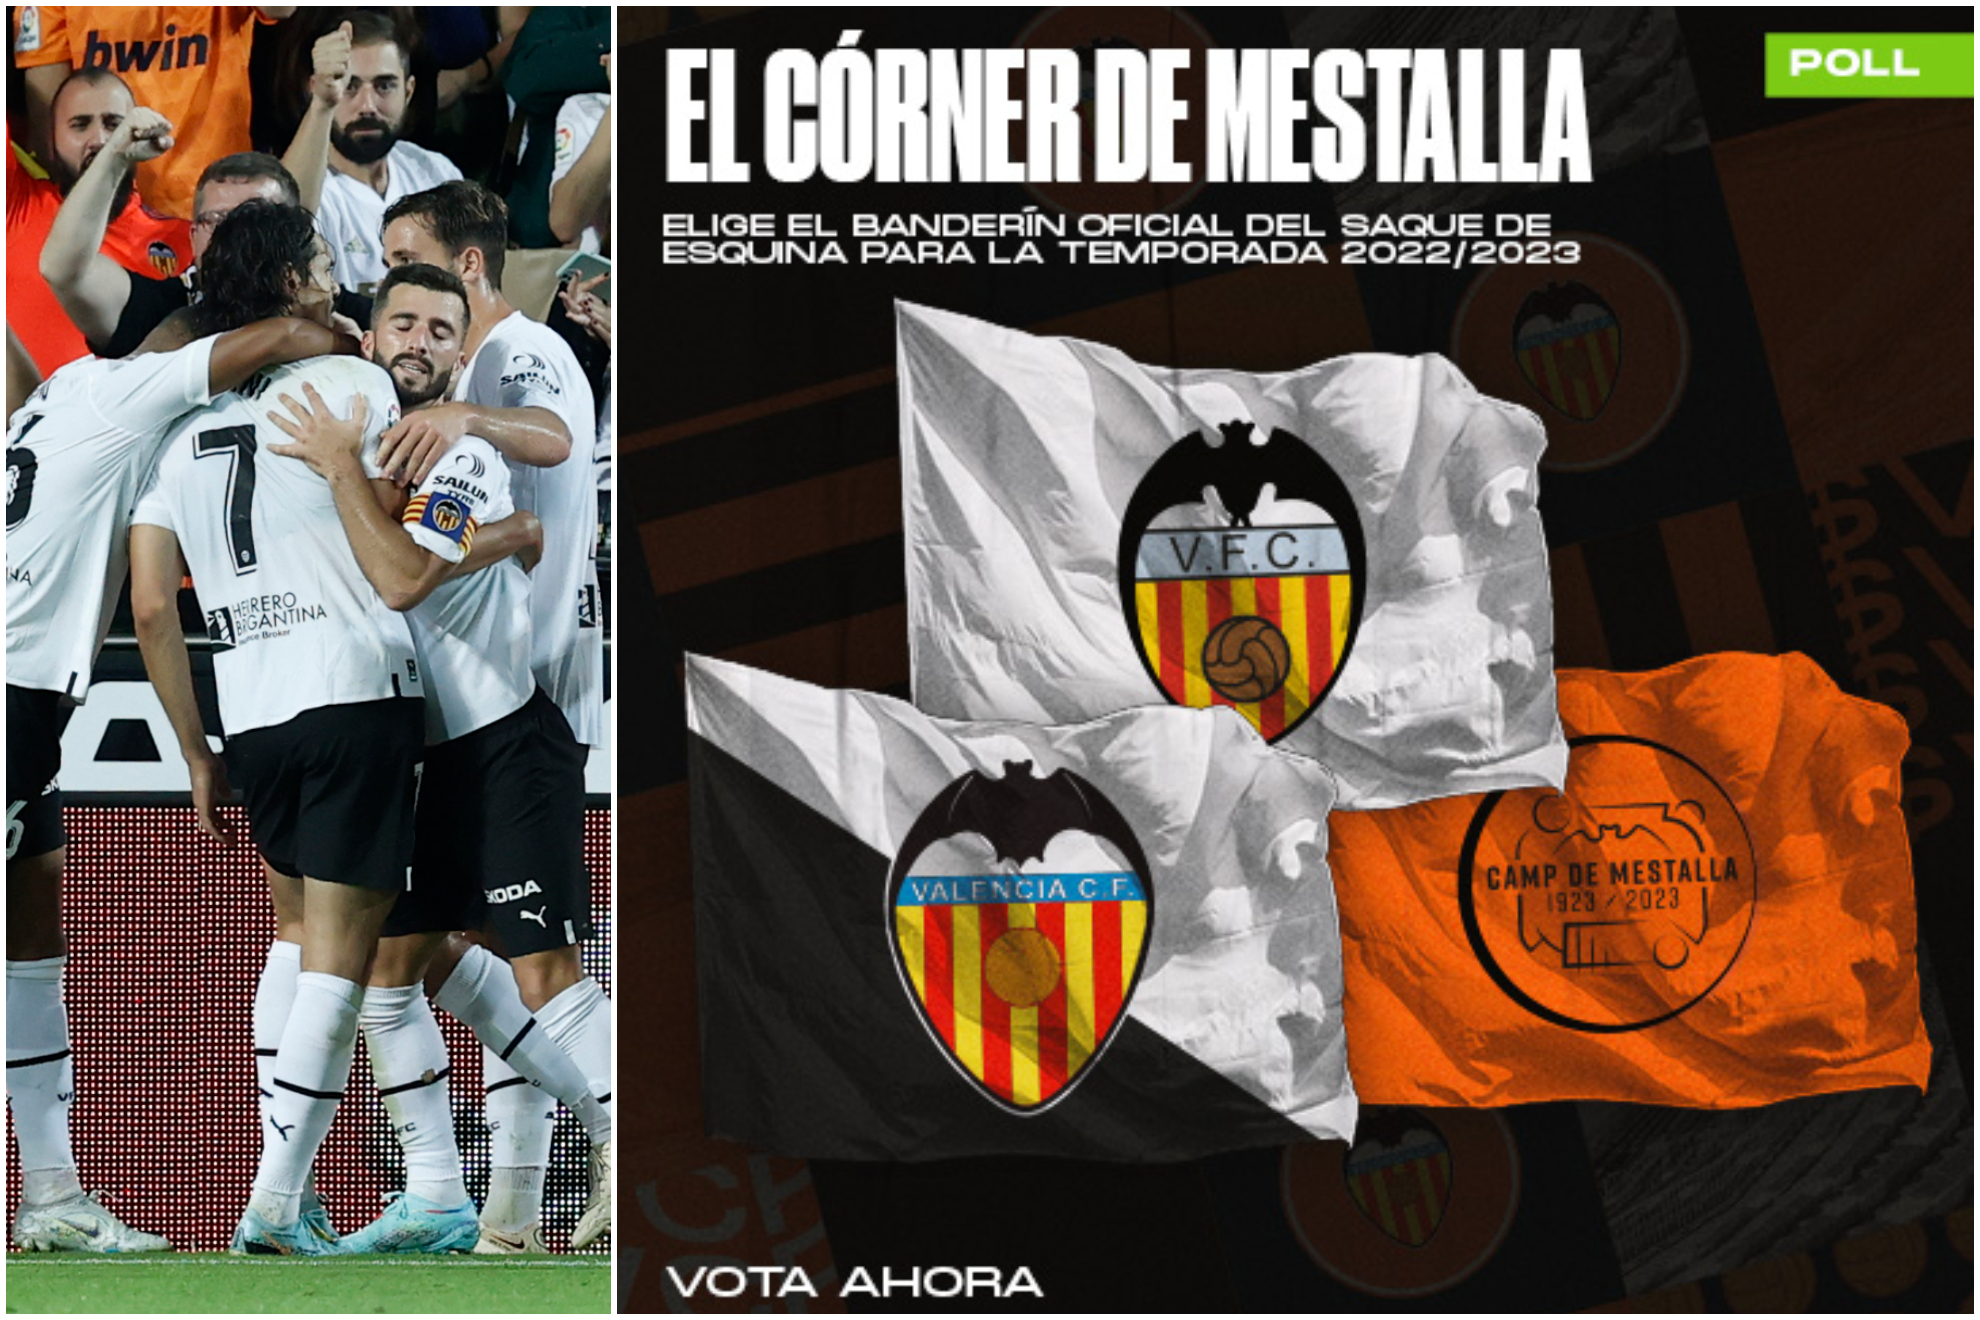 Deja tu huella en Mestalla y elige el banderín de córner del estadio